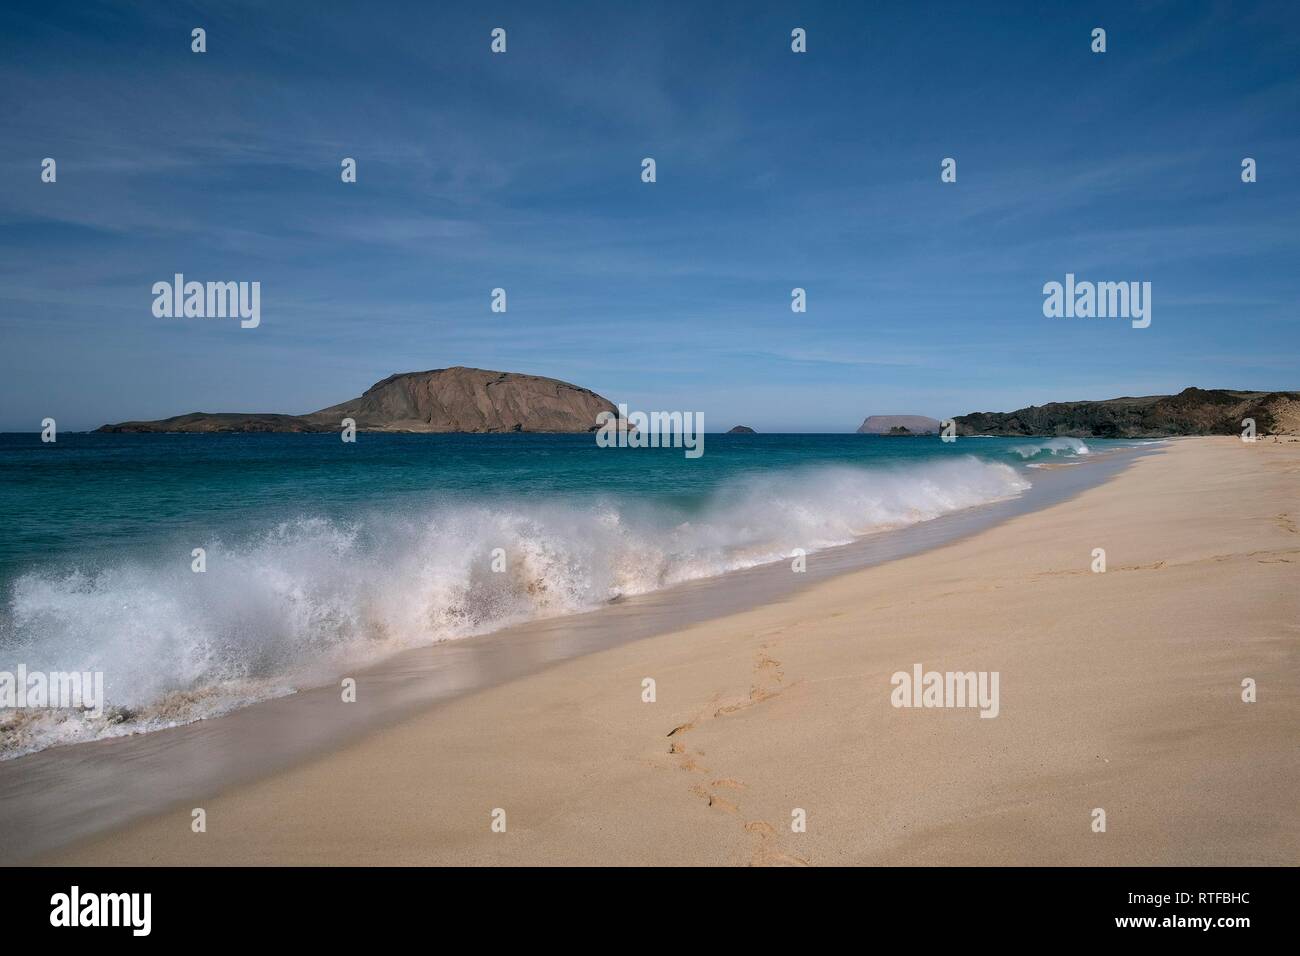 Las olas en la playa de arena, playa de las conchas en el norte, La  Graciosa, Islas Canarias, España Fotografía de stock - Alamy